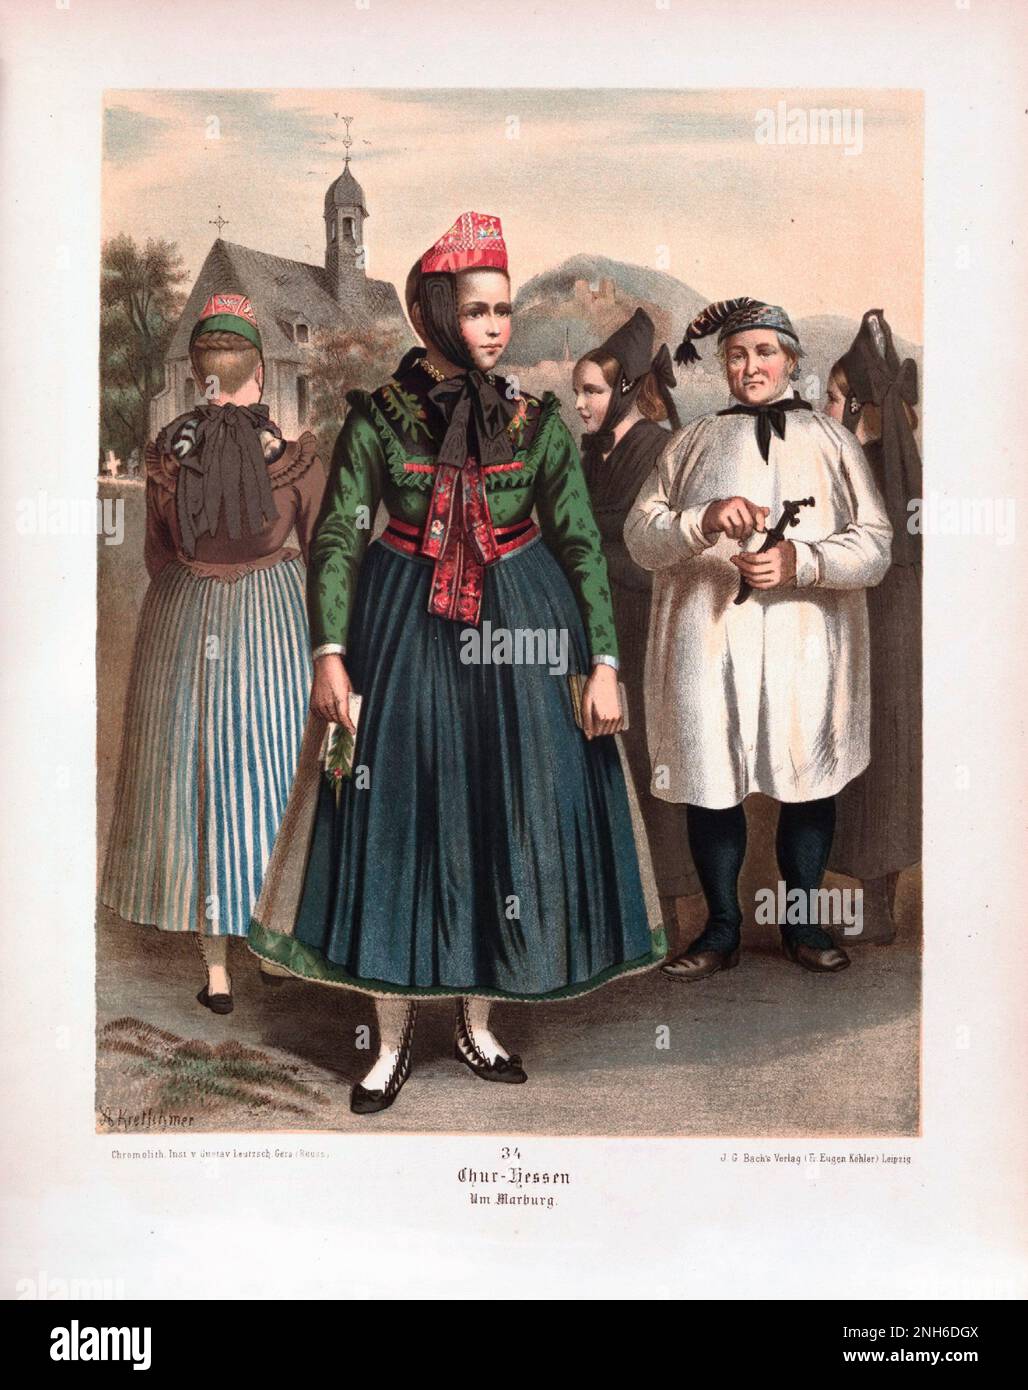 Disfraz folclórico alemán. A cargo de Chur-Hessen. litografía del siglo 19th. Foto de stock